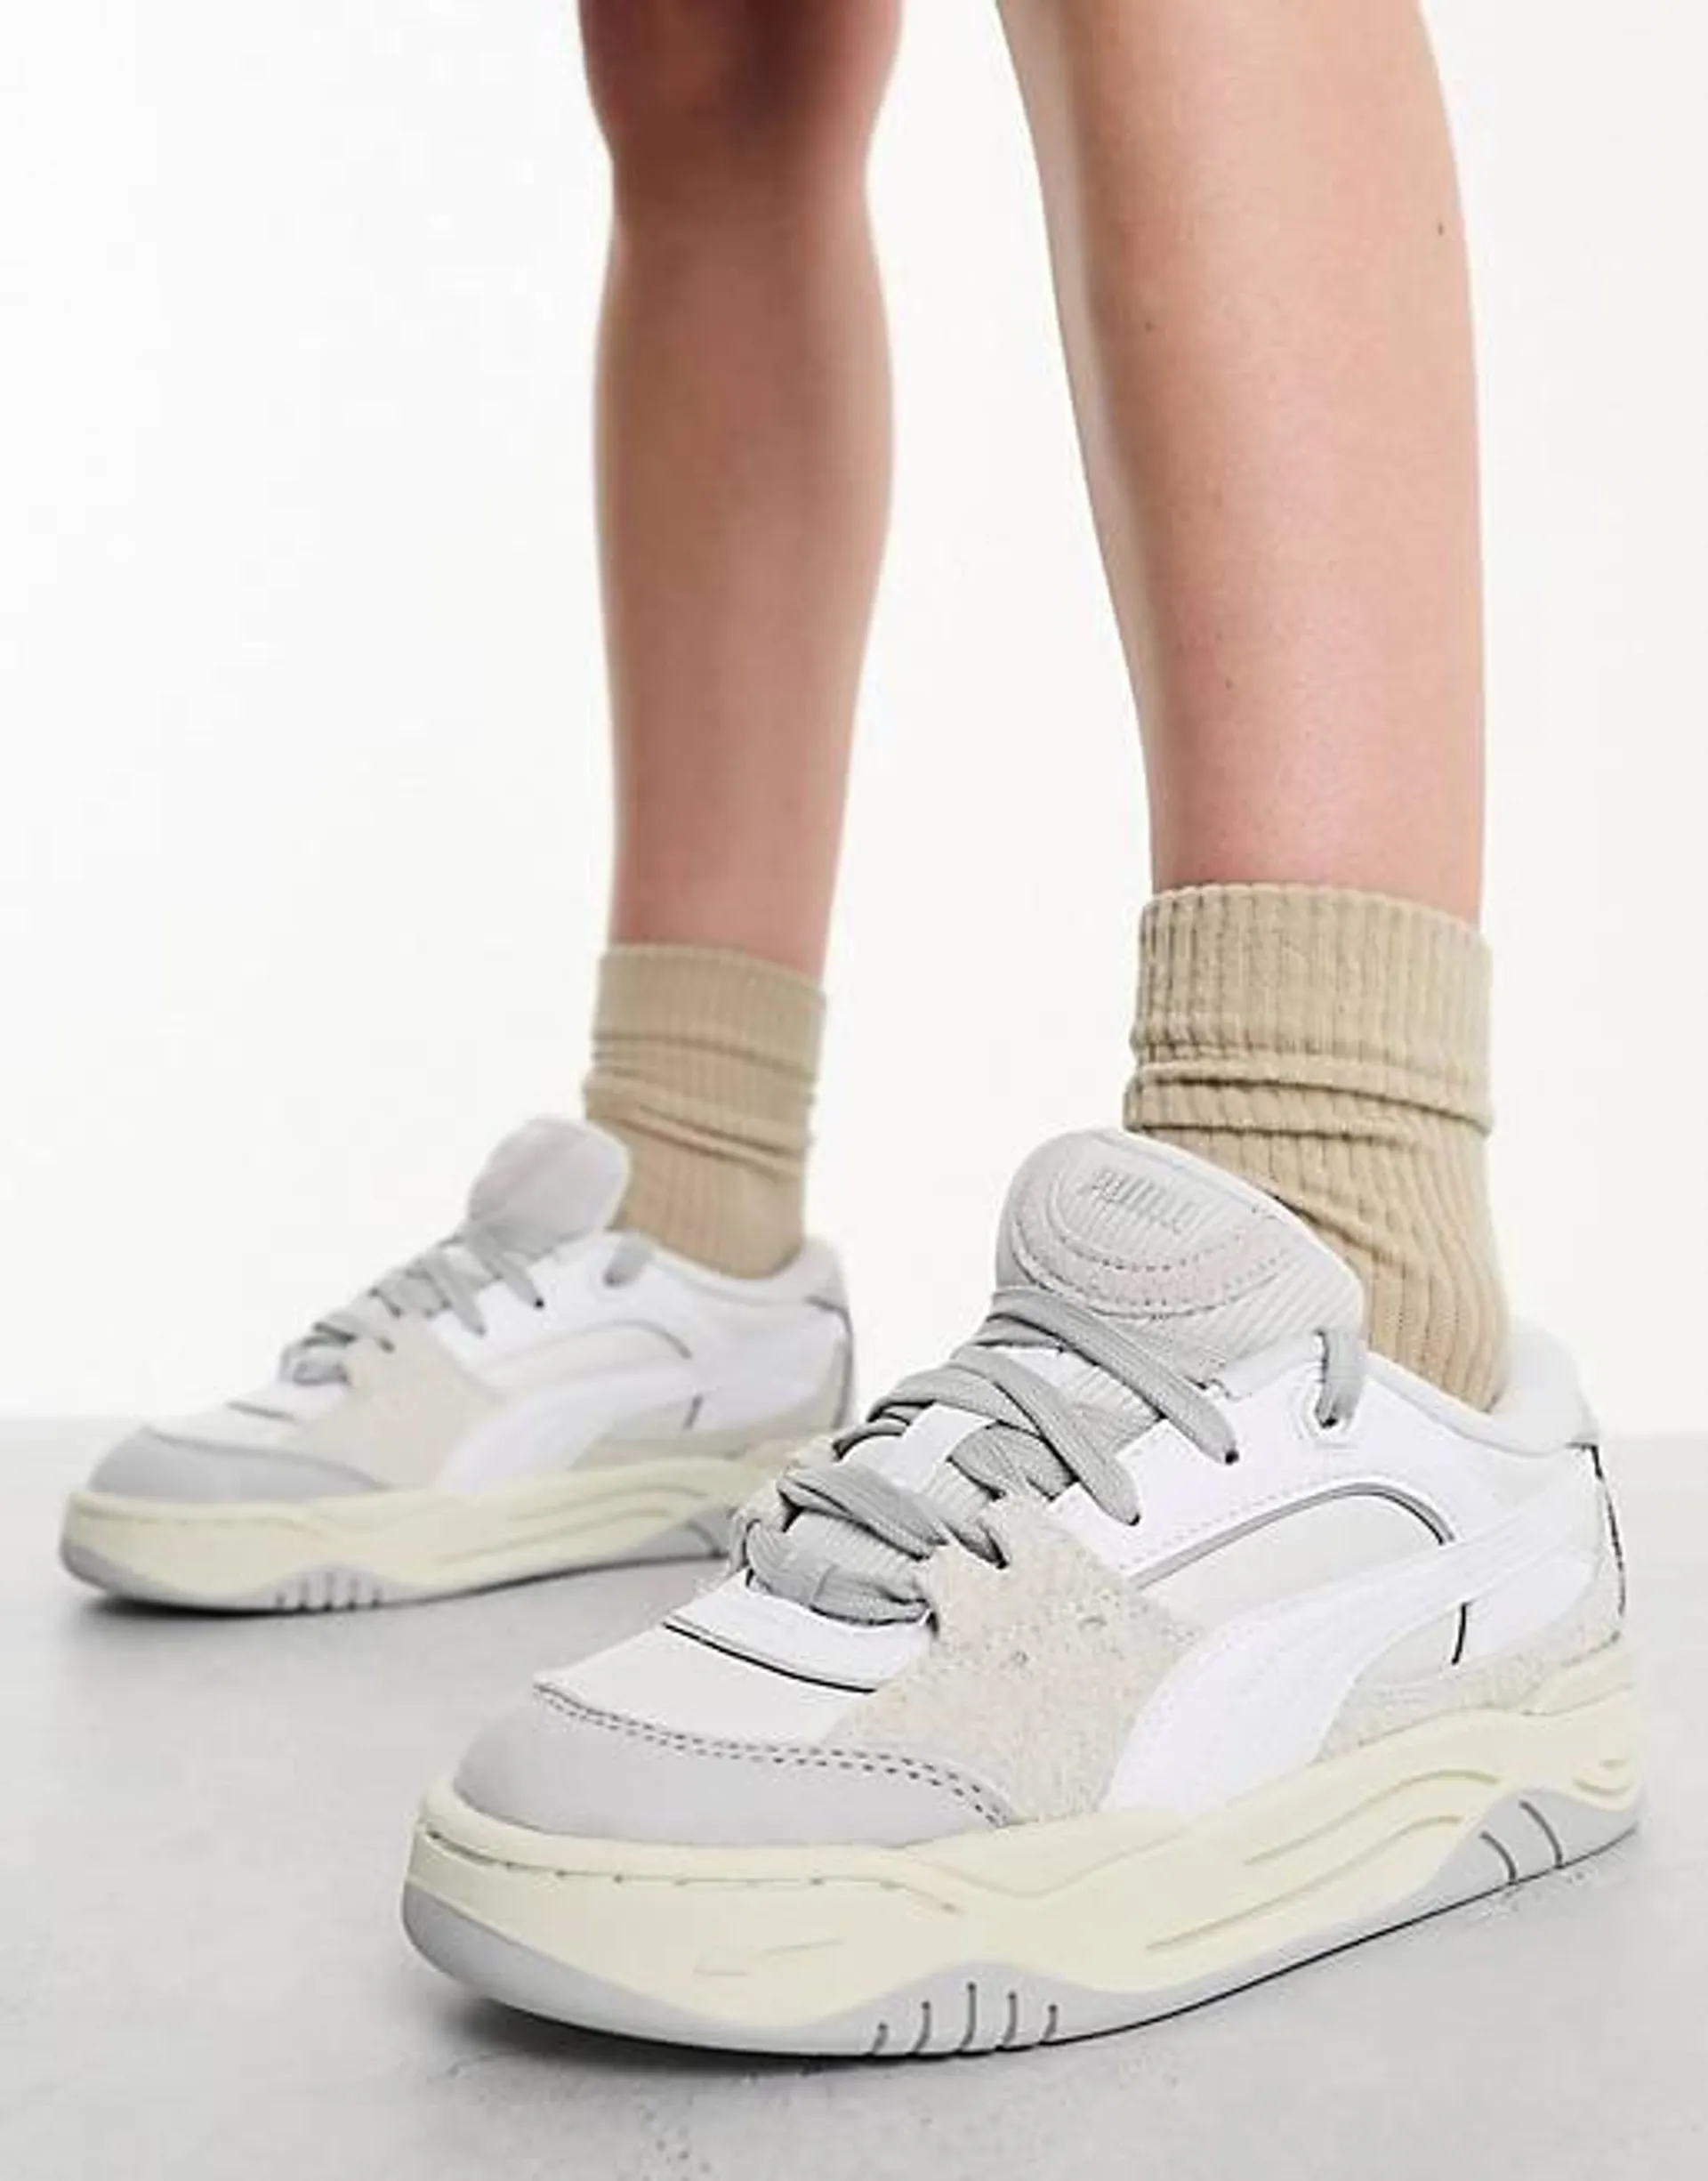 PUMA – 180 – Vita och grå sneakers